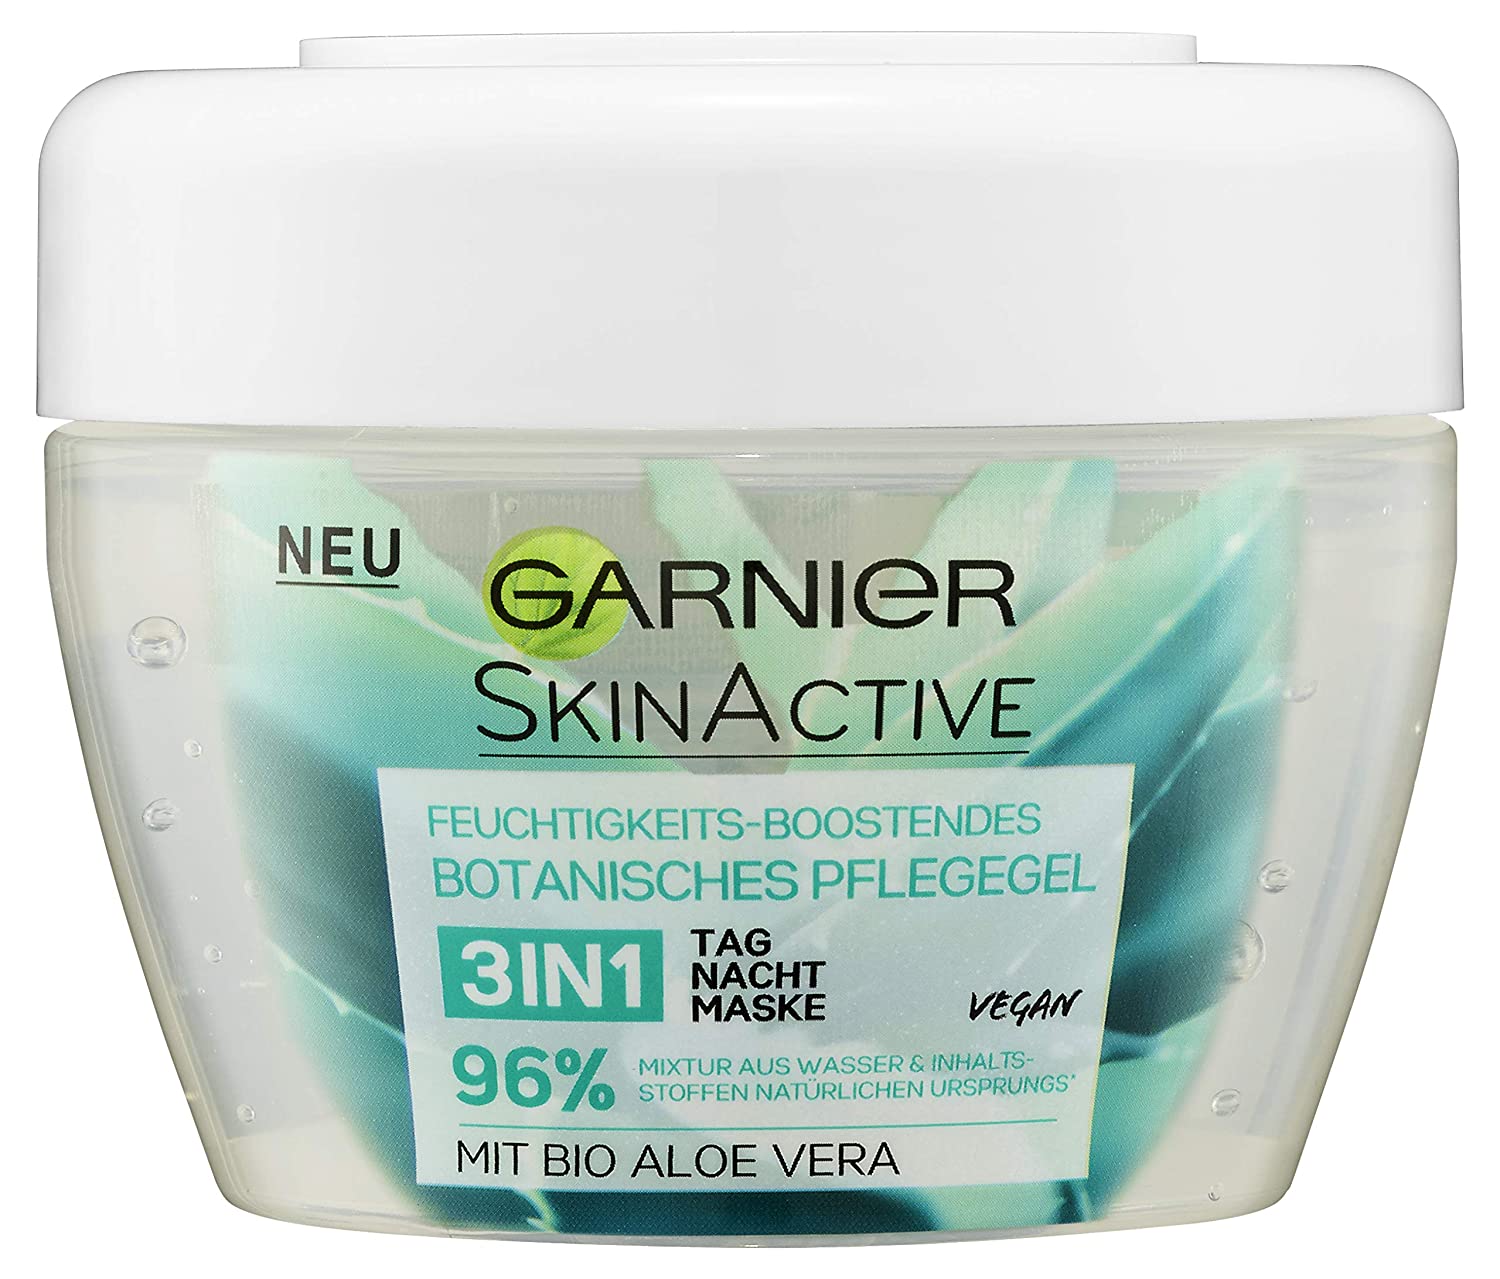 Garnier Ski Nactive Hydra Bomb 3 in 1 Day Cream/intensively moisturising cream with pomegranate & Amla – for Feuchtigkeitsbedürftige Skin – Dermatologically Tested – Paraben-Free) 1 pack (1 x 50 ml)